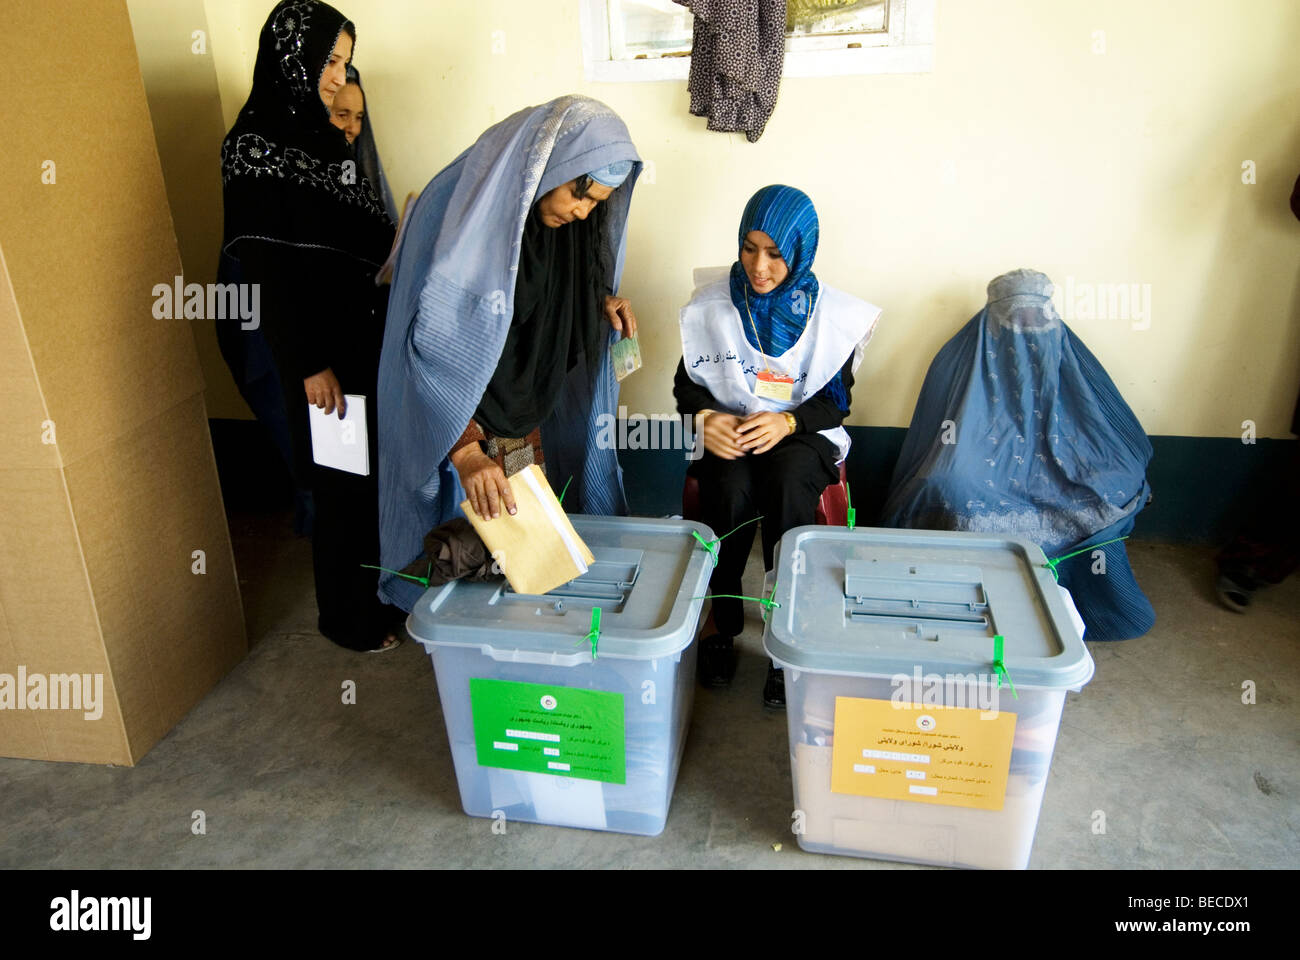 Afghanischen Wahlen August 20. 2009 Frauen Voten beobachtet von zwei weiblichen Beamten, man eine Burka tragen. Ahmady Moschee Bezirk 6 Stockfoto